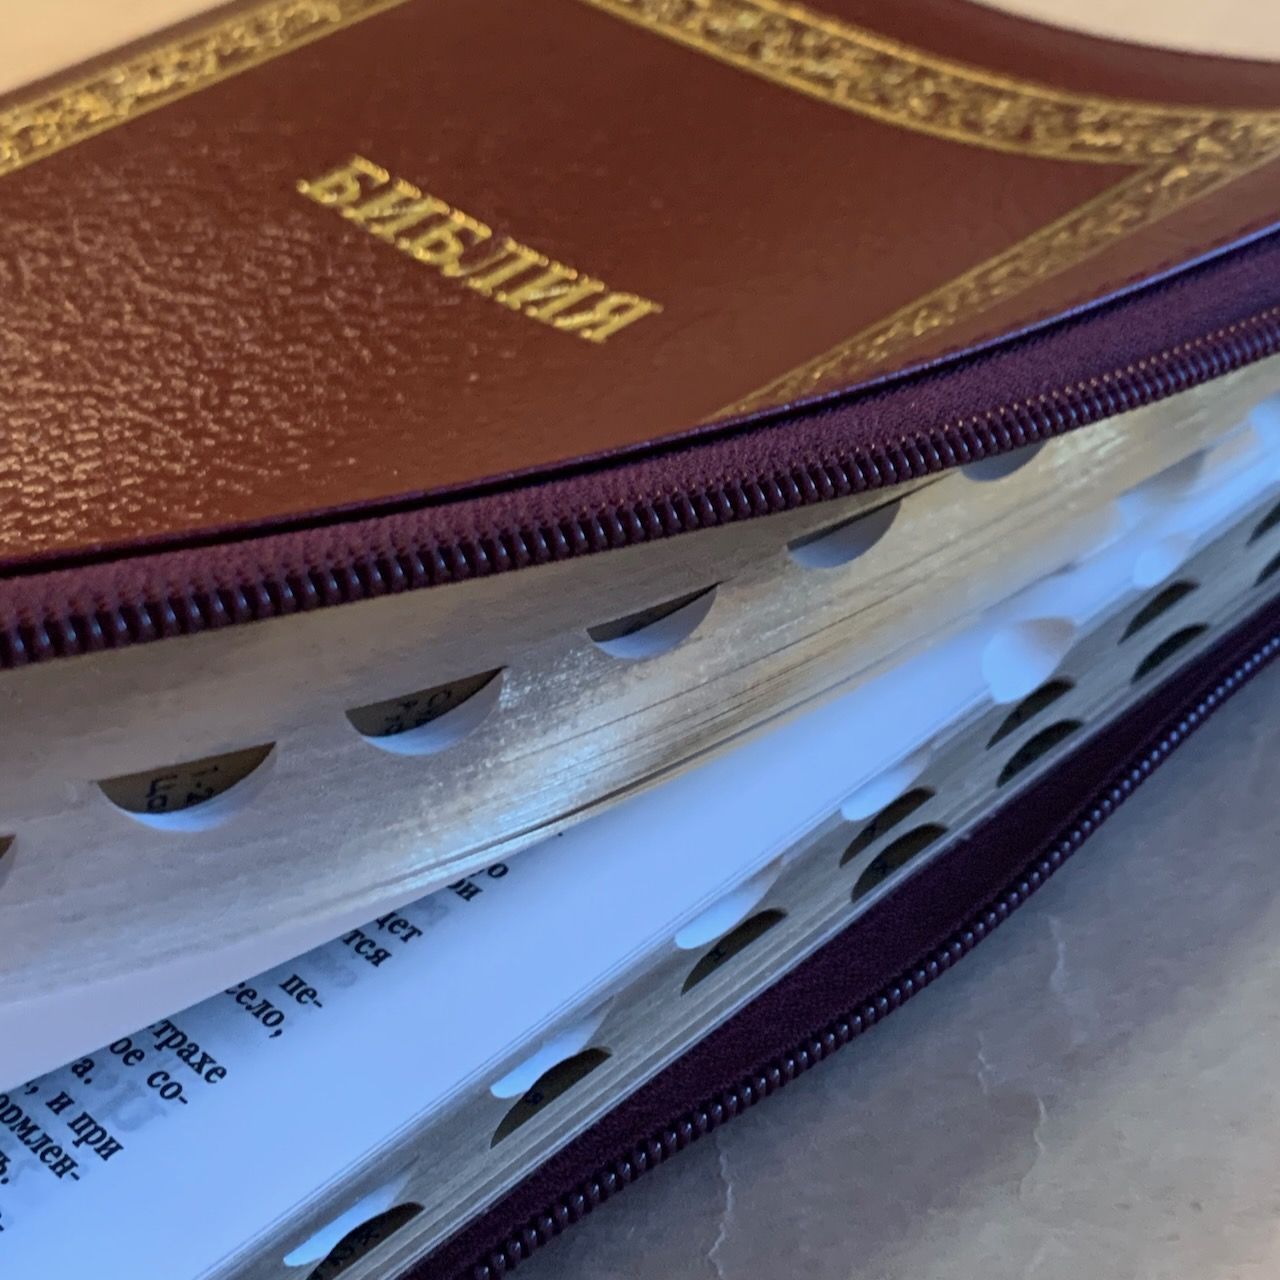 Библия 076zti код C10, дизайн "золотая рамка растительный орнамент", кожаный переплет на молнии с индексами, цвет бордо пятнистый металлик, размер 180x243 мм